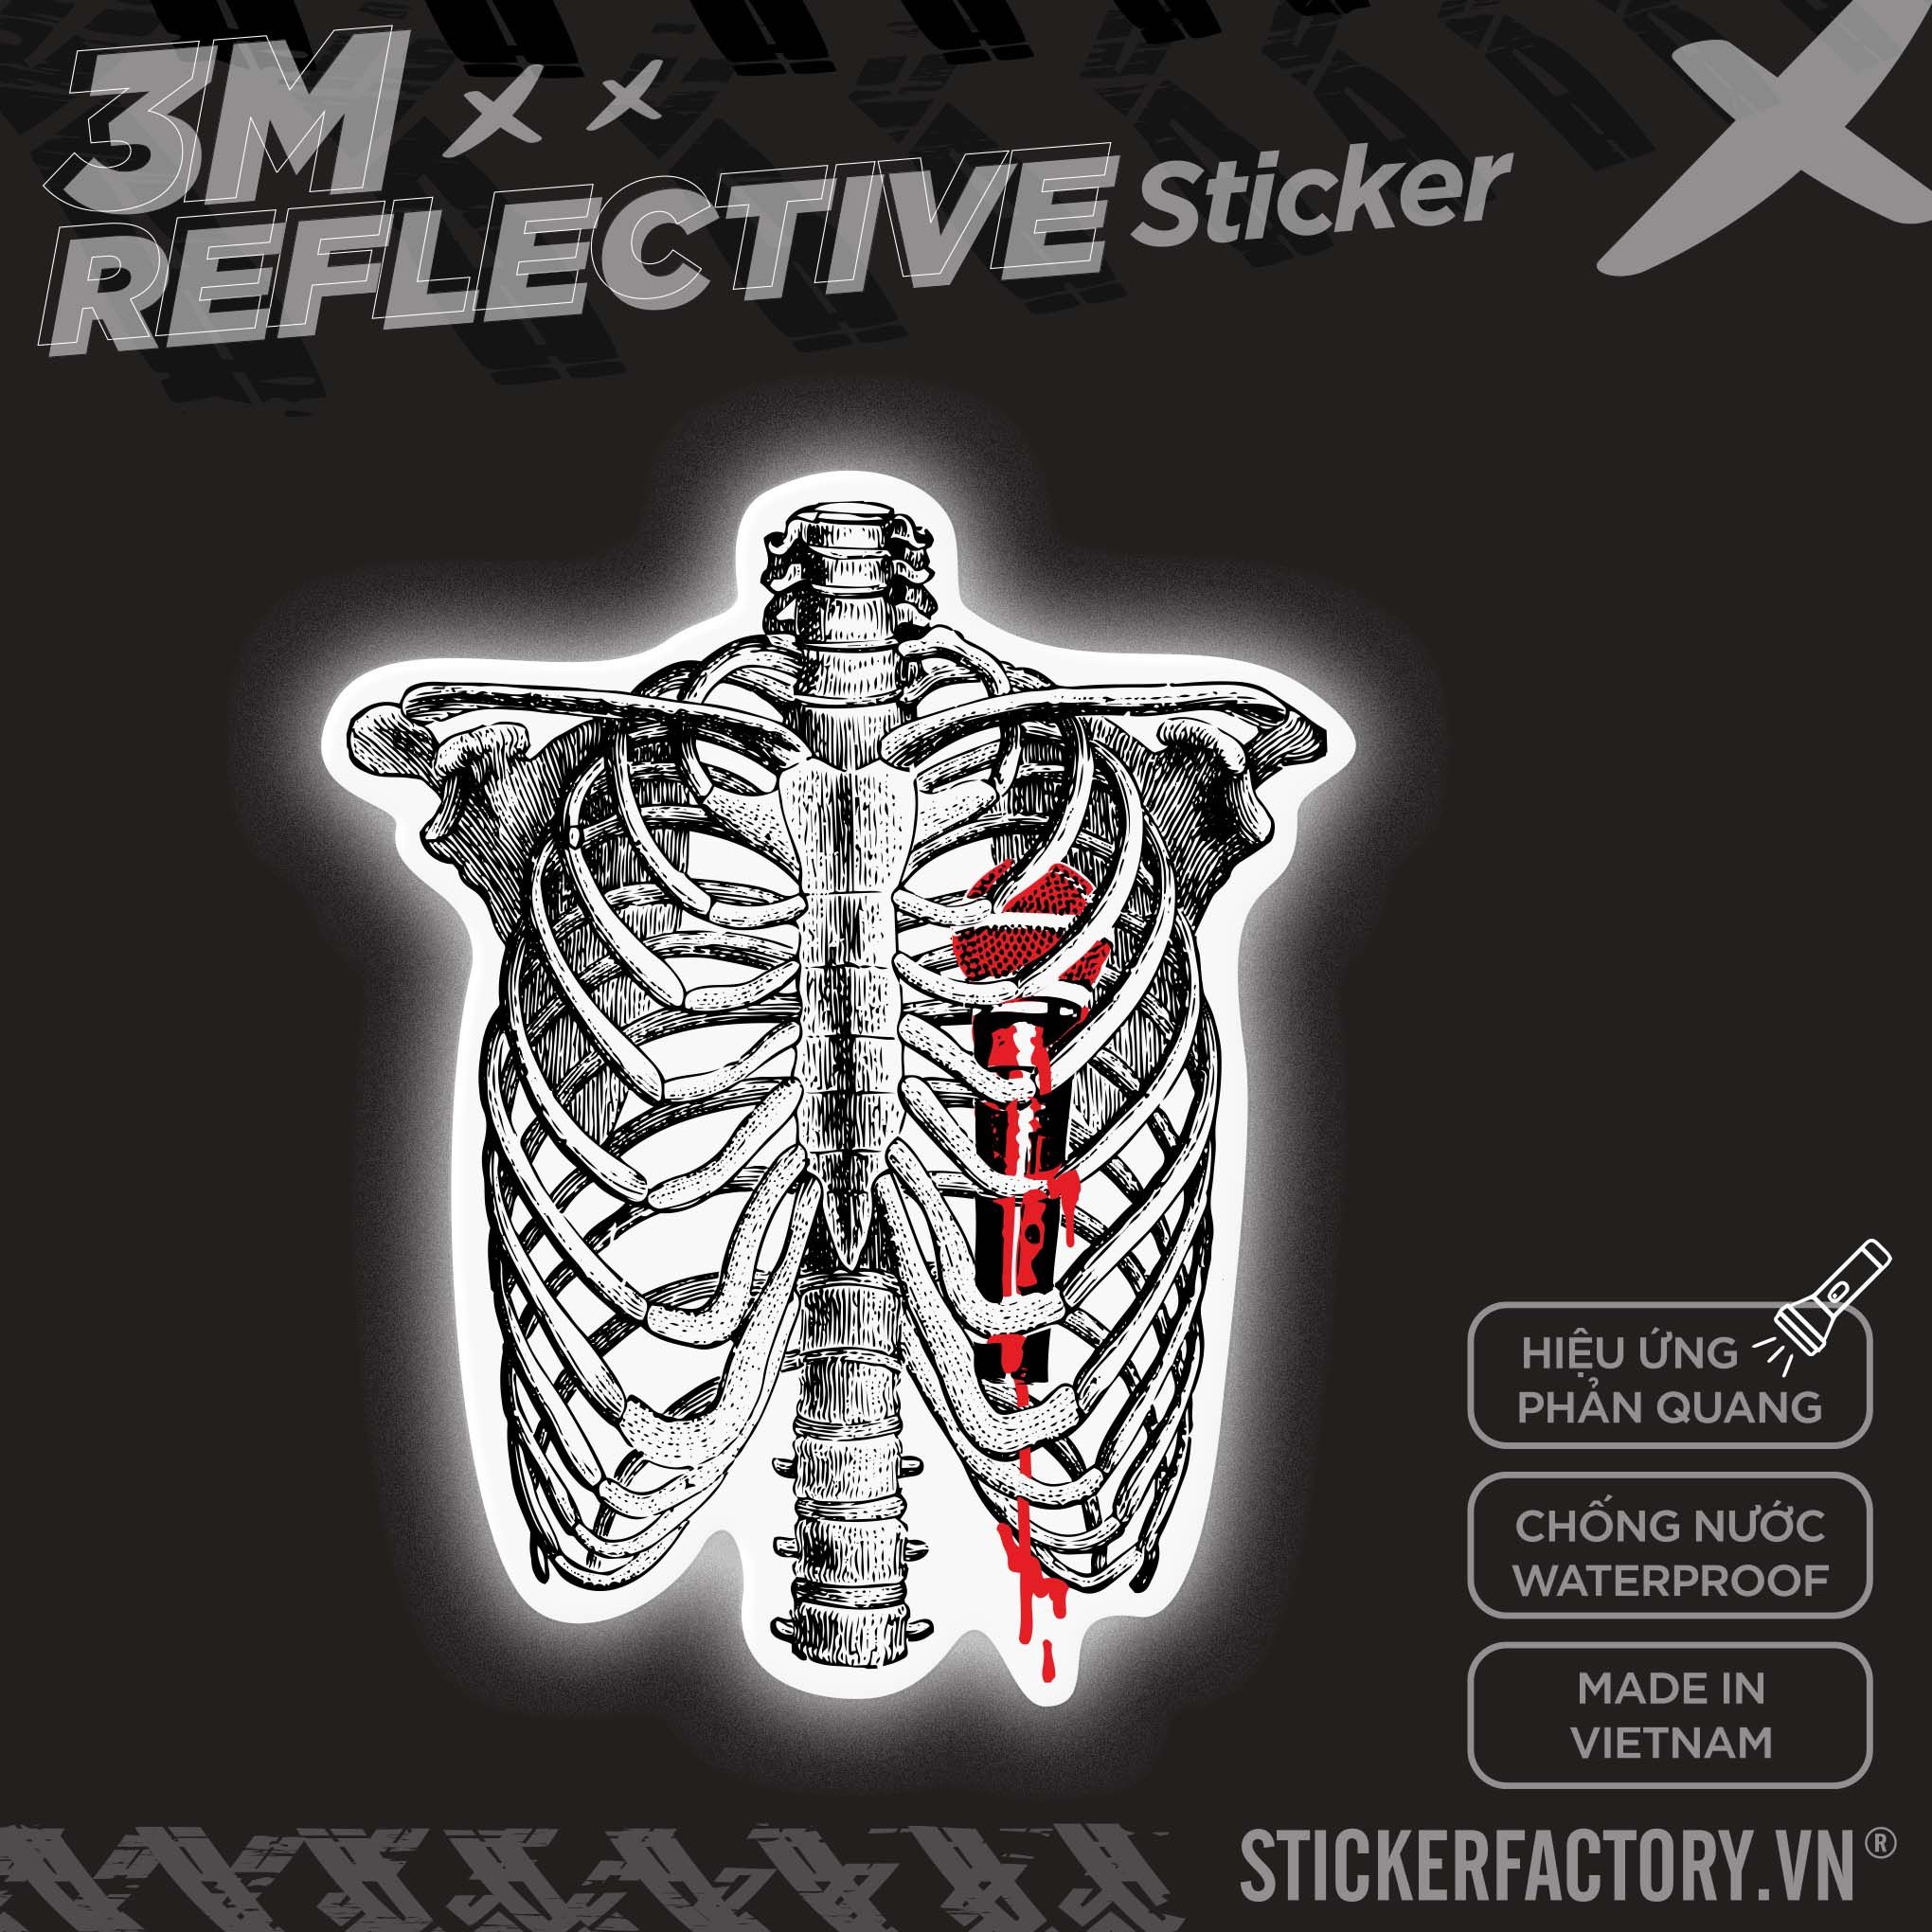 SKELETON MICROPHONE HEART 3M - Reflective Sticker Die-cut